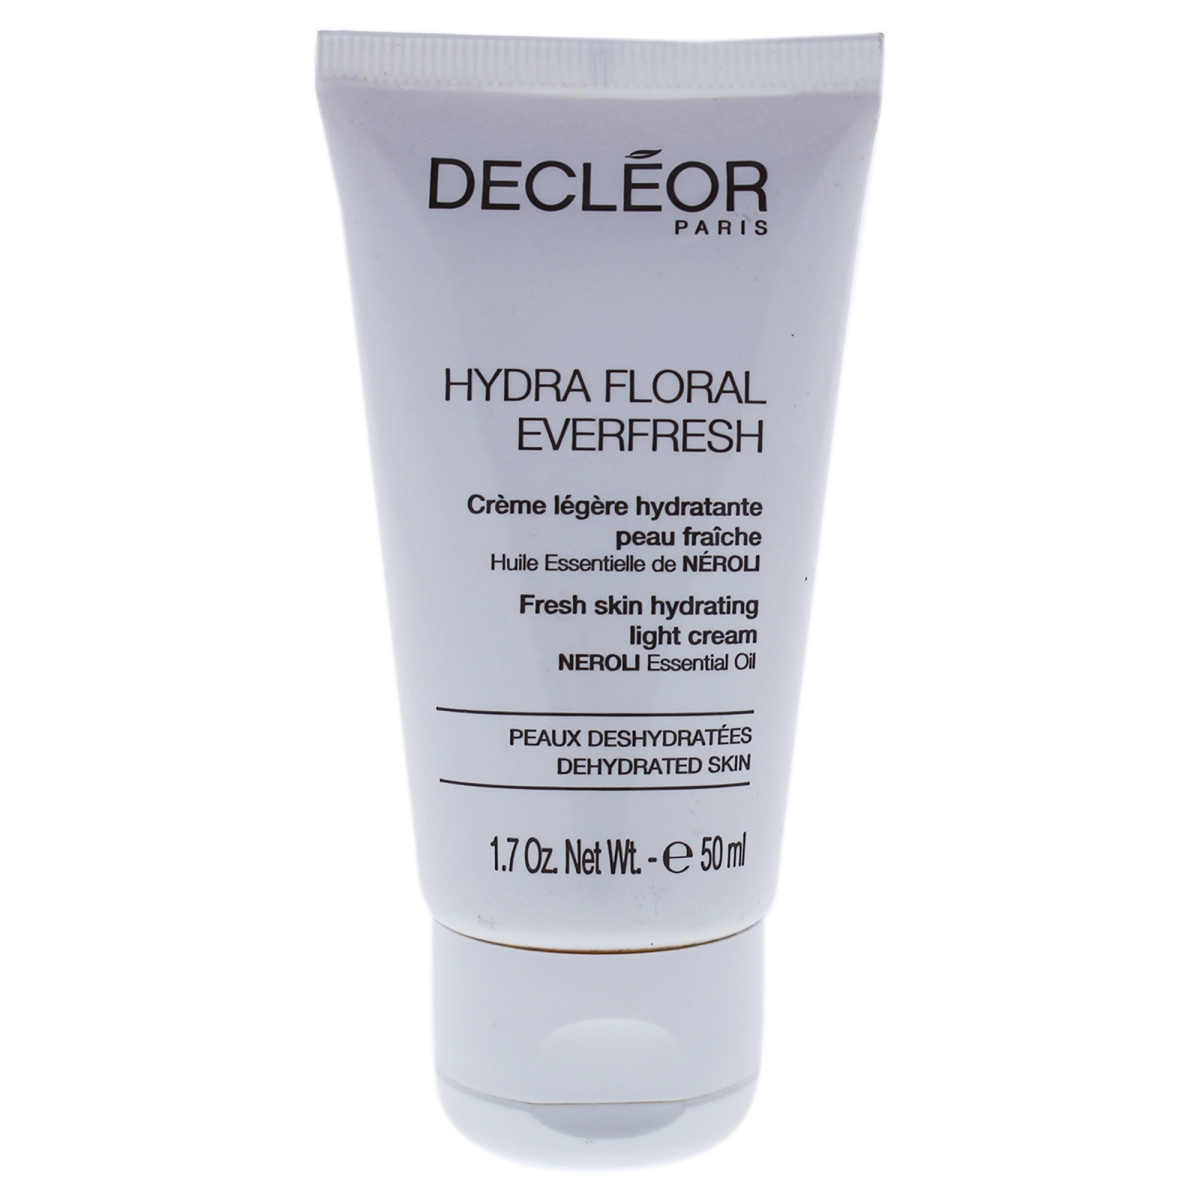 I0086451 Hydra Floral Everfresh Fresh Skin Hydrating Light Cream For Unisex - 1.7 Oz